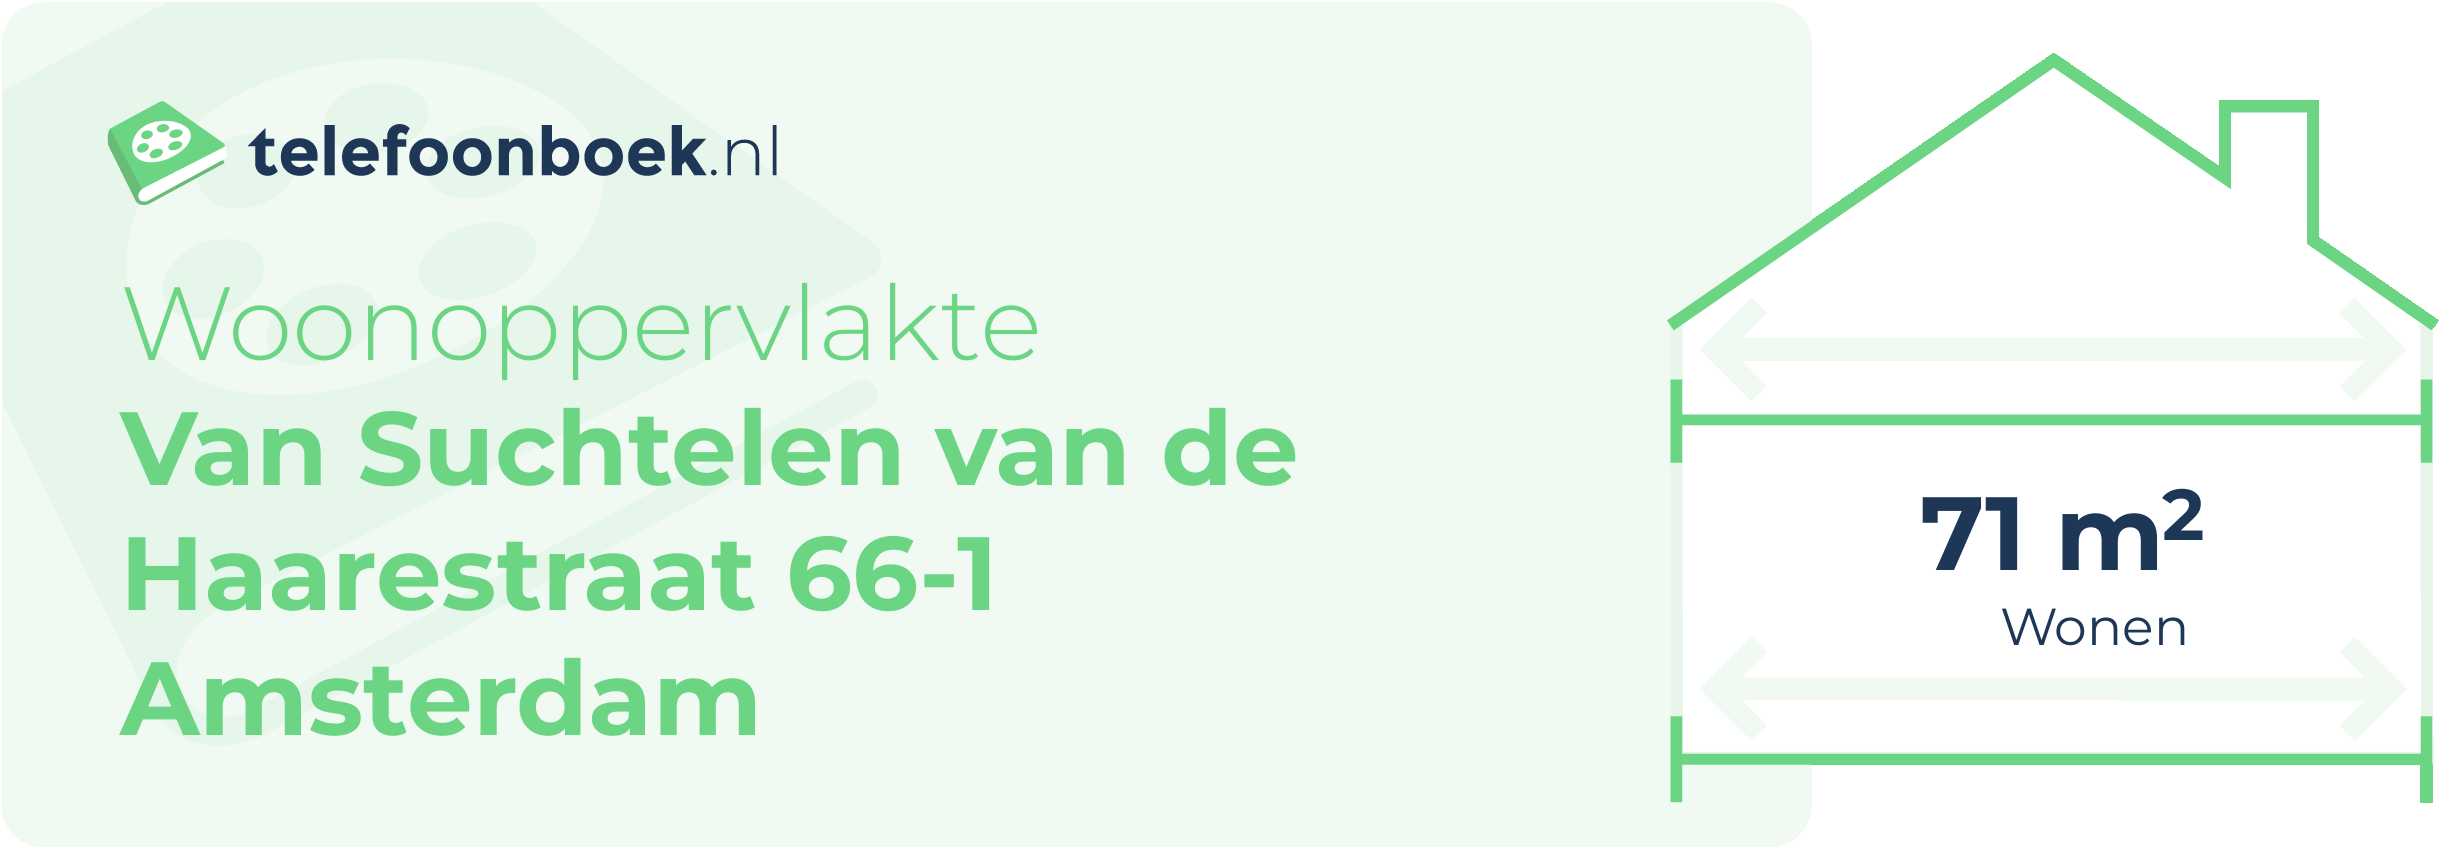 Woonoppervlakte Van Suchtelen Van De Haarestraat 66-1 Amsterdam